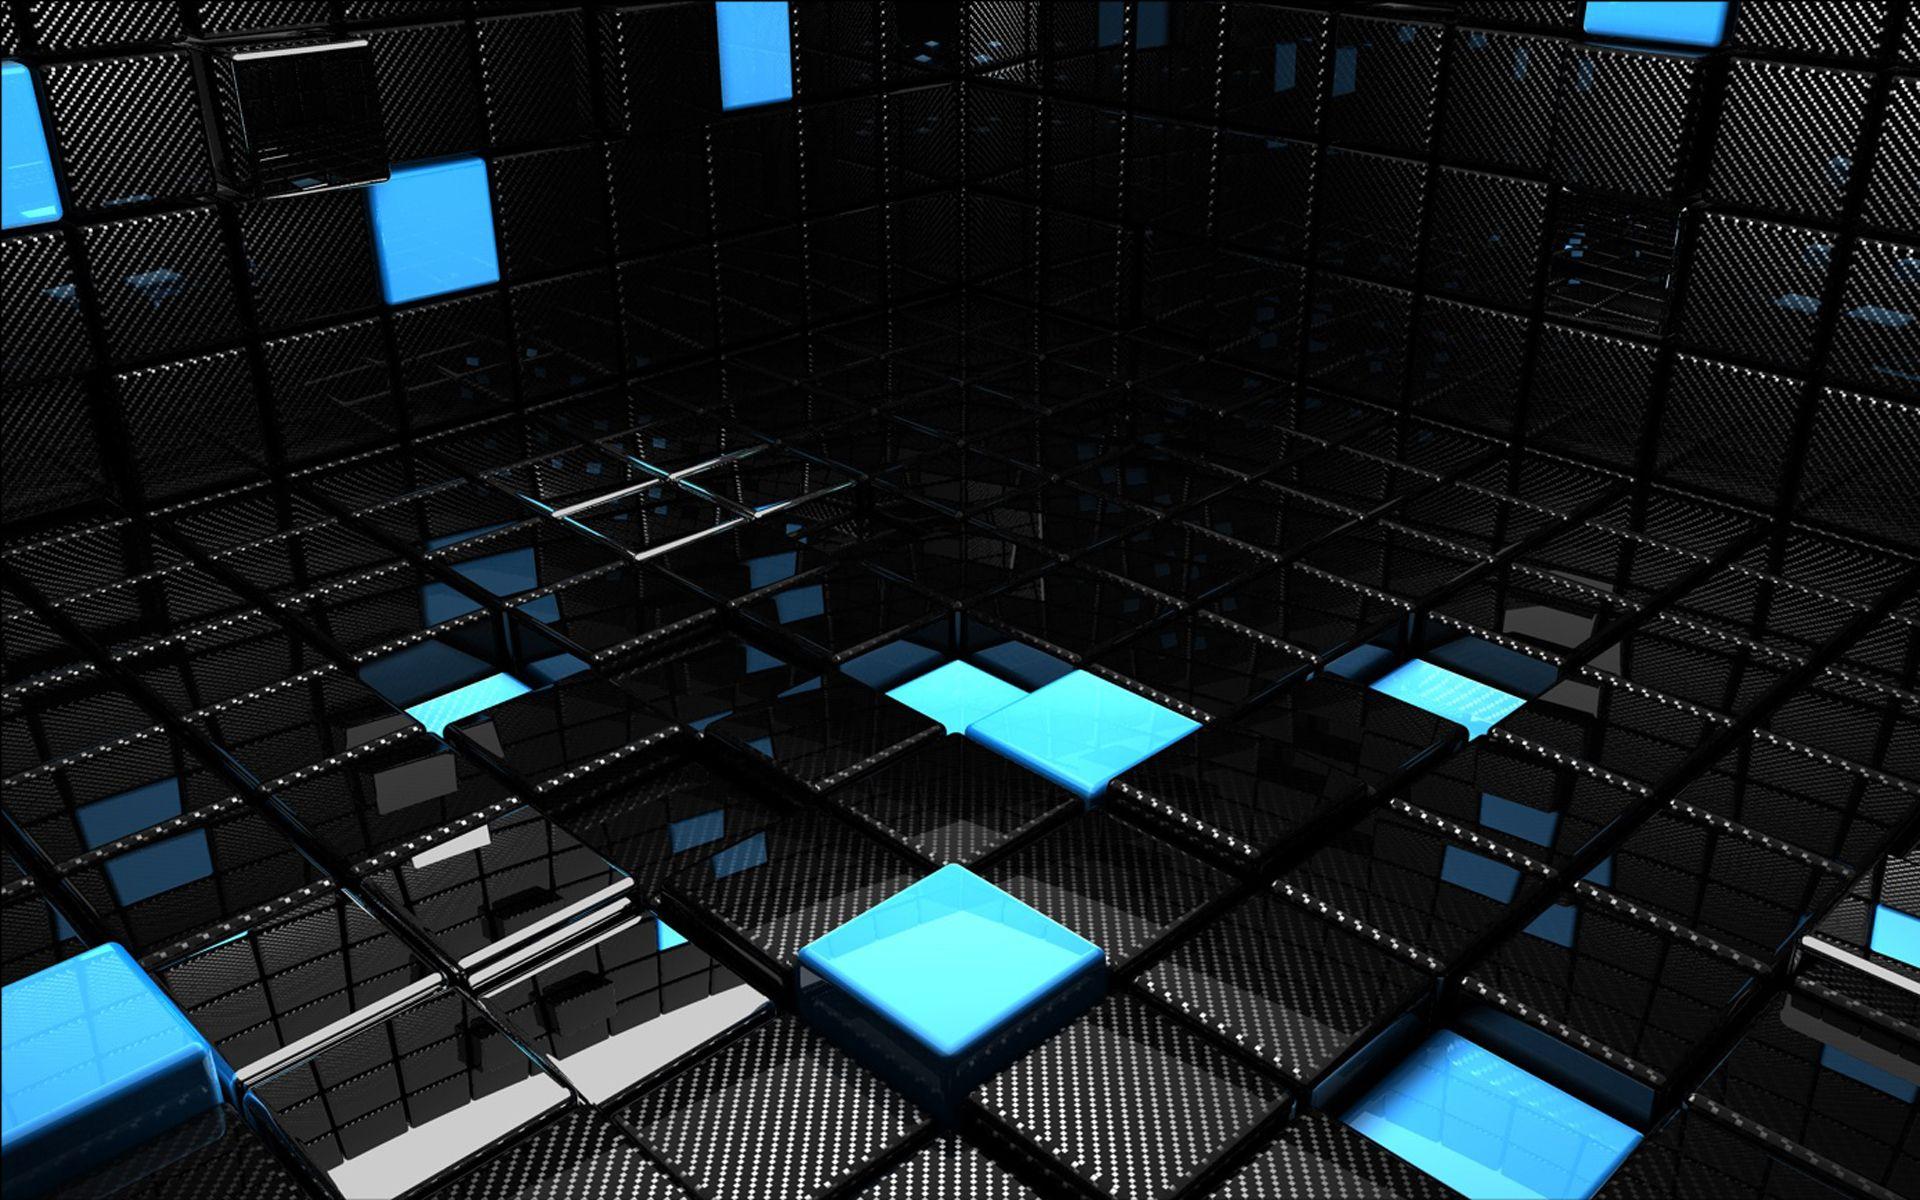 Blue And Black 3D Desktop Background Wallpaper. MoshLab